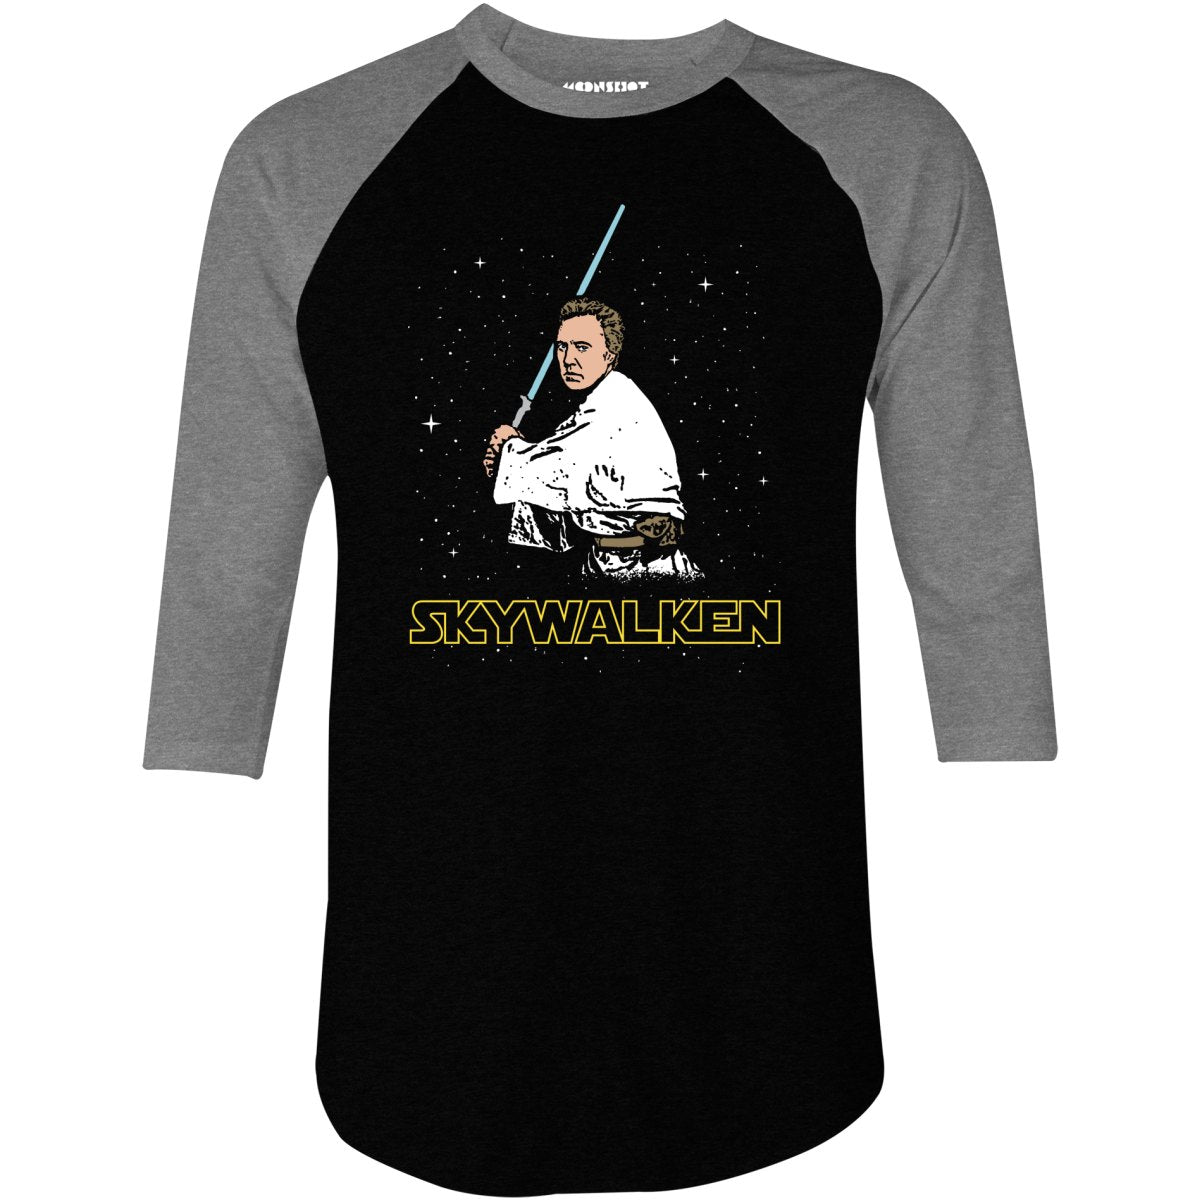 Skywalken - 3/4 Sleeve Raglan T-Shirt